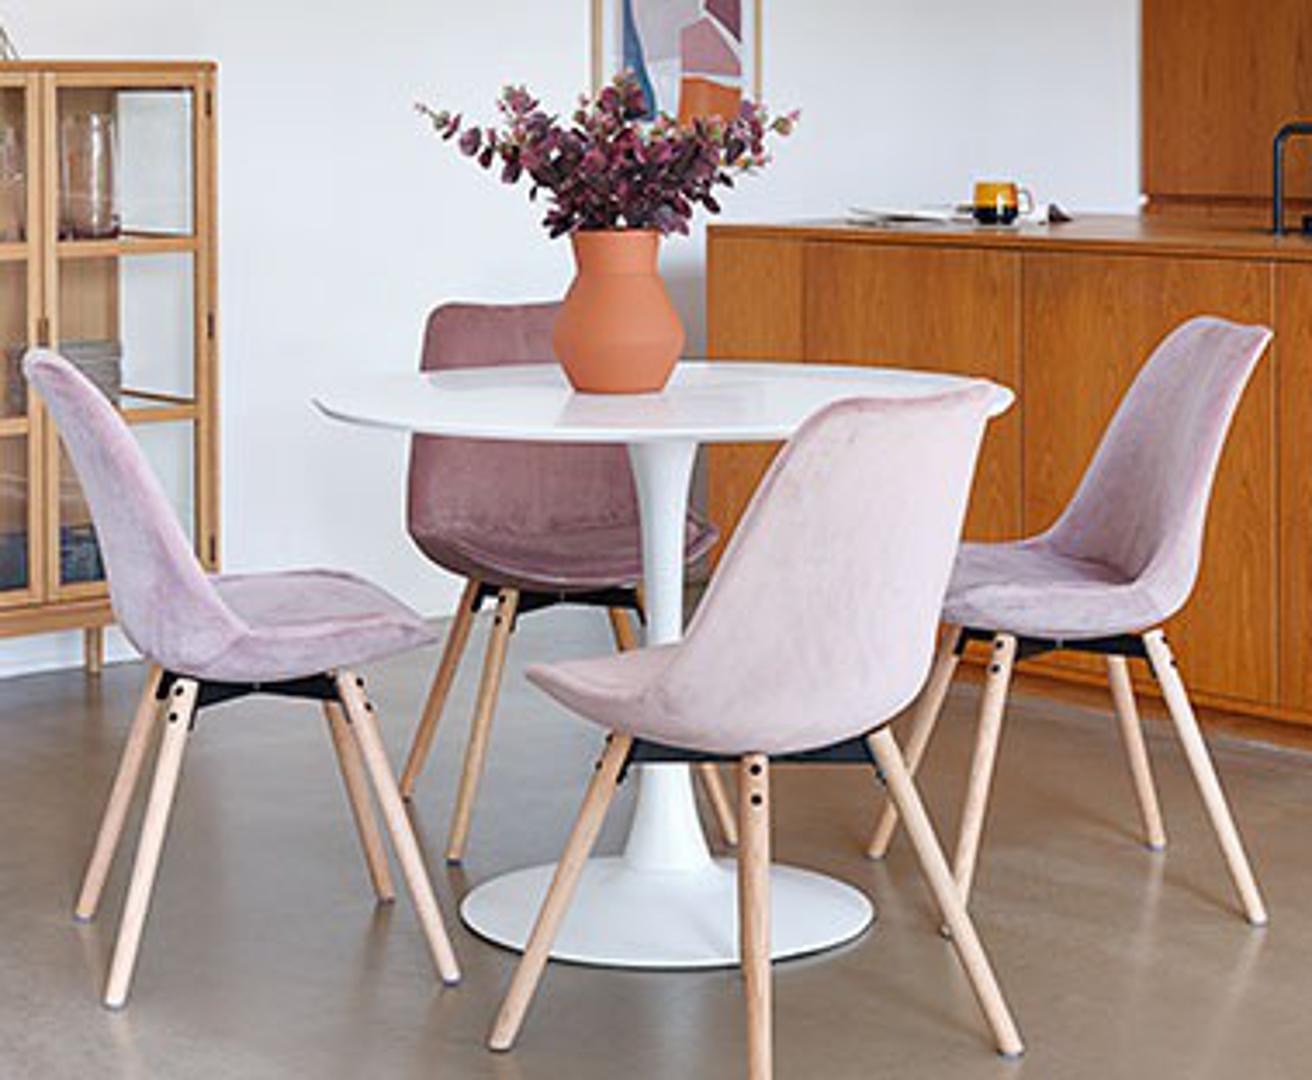 Povoljni i vrlo efektni, a uz to i praktični jer stanu i male prostore, ovi su stolci iz JYSK-a